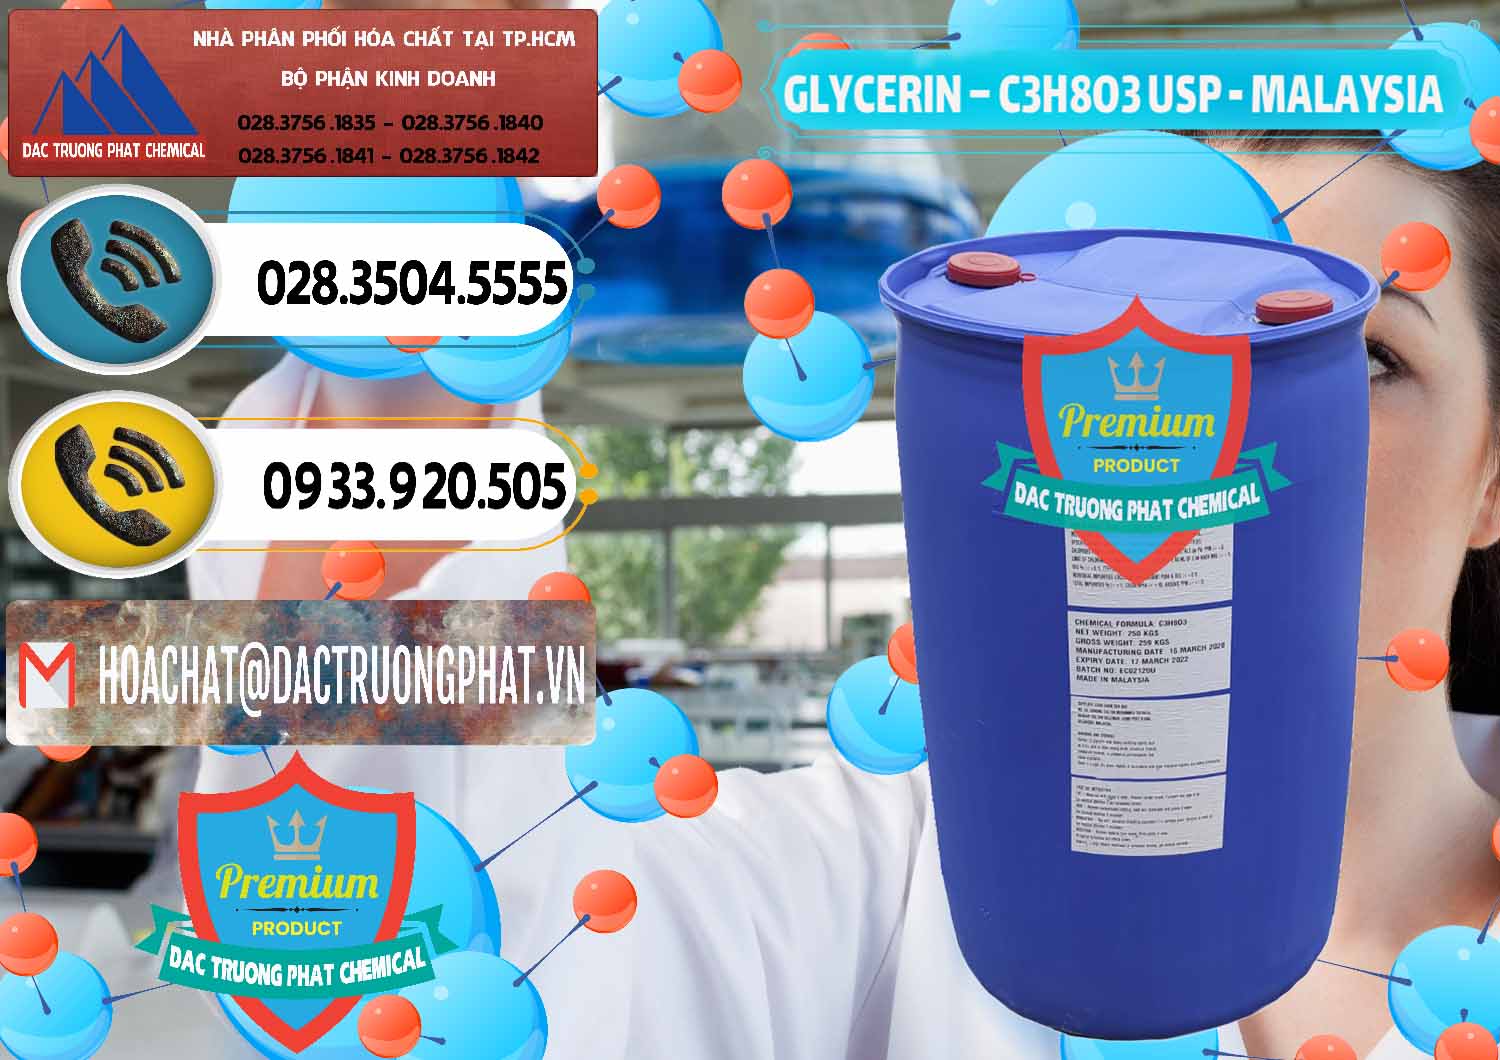 Đơn vị chuyên nhập khẩu _ bán Glycerin – C3H8O3 USP Malaysia - 0233 - Chuyên phân phối & bán hóa chất tại TP.HCM - hoachatdetnhuom.vn